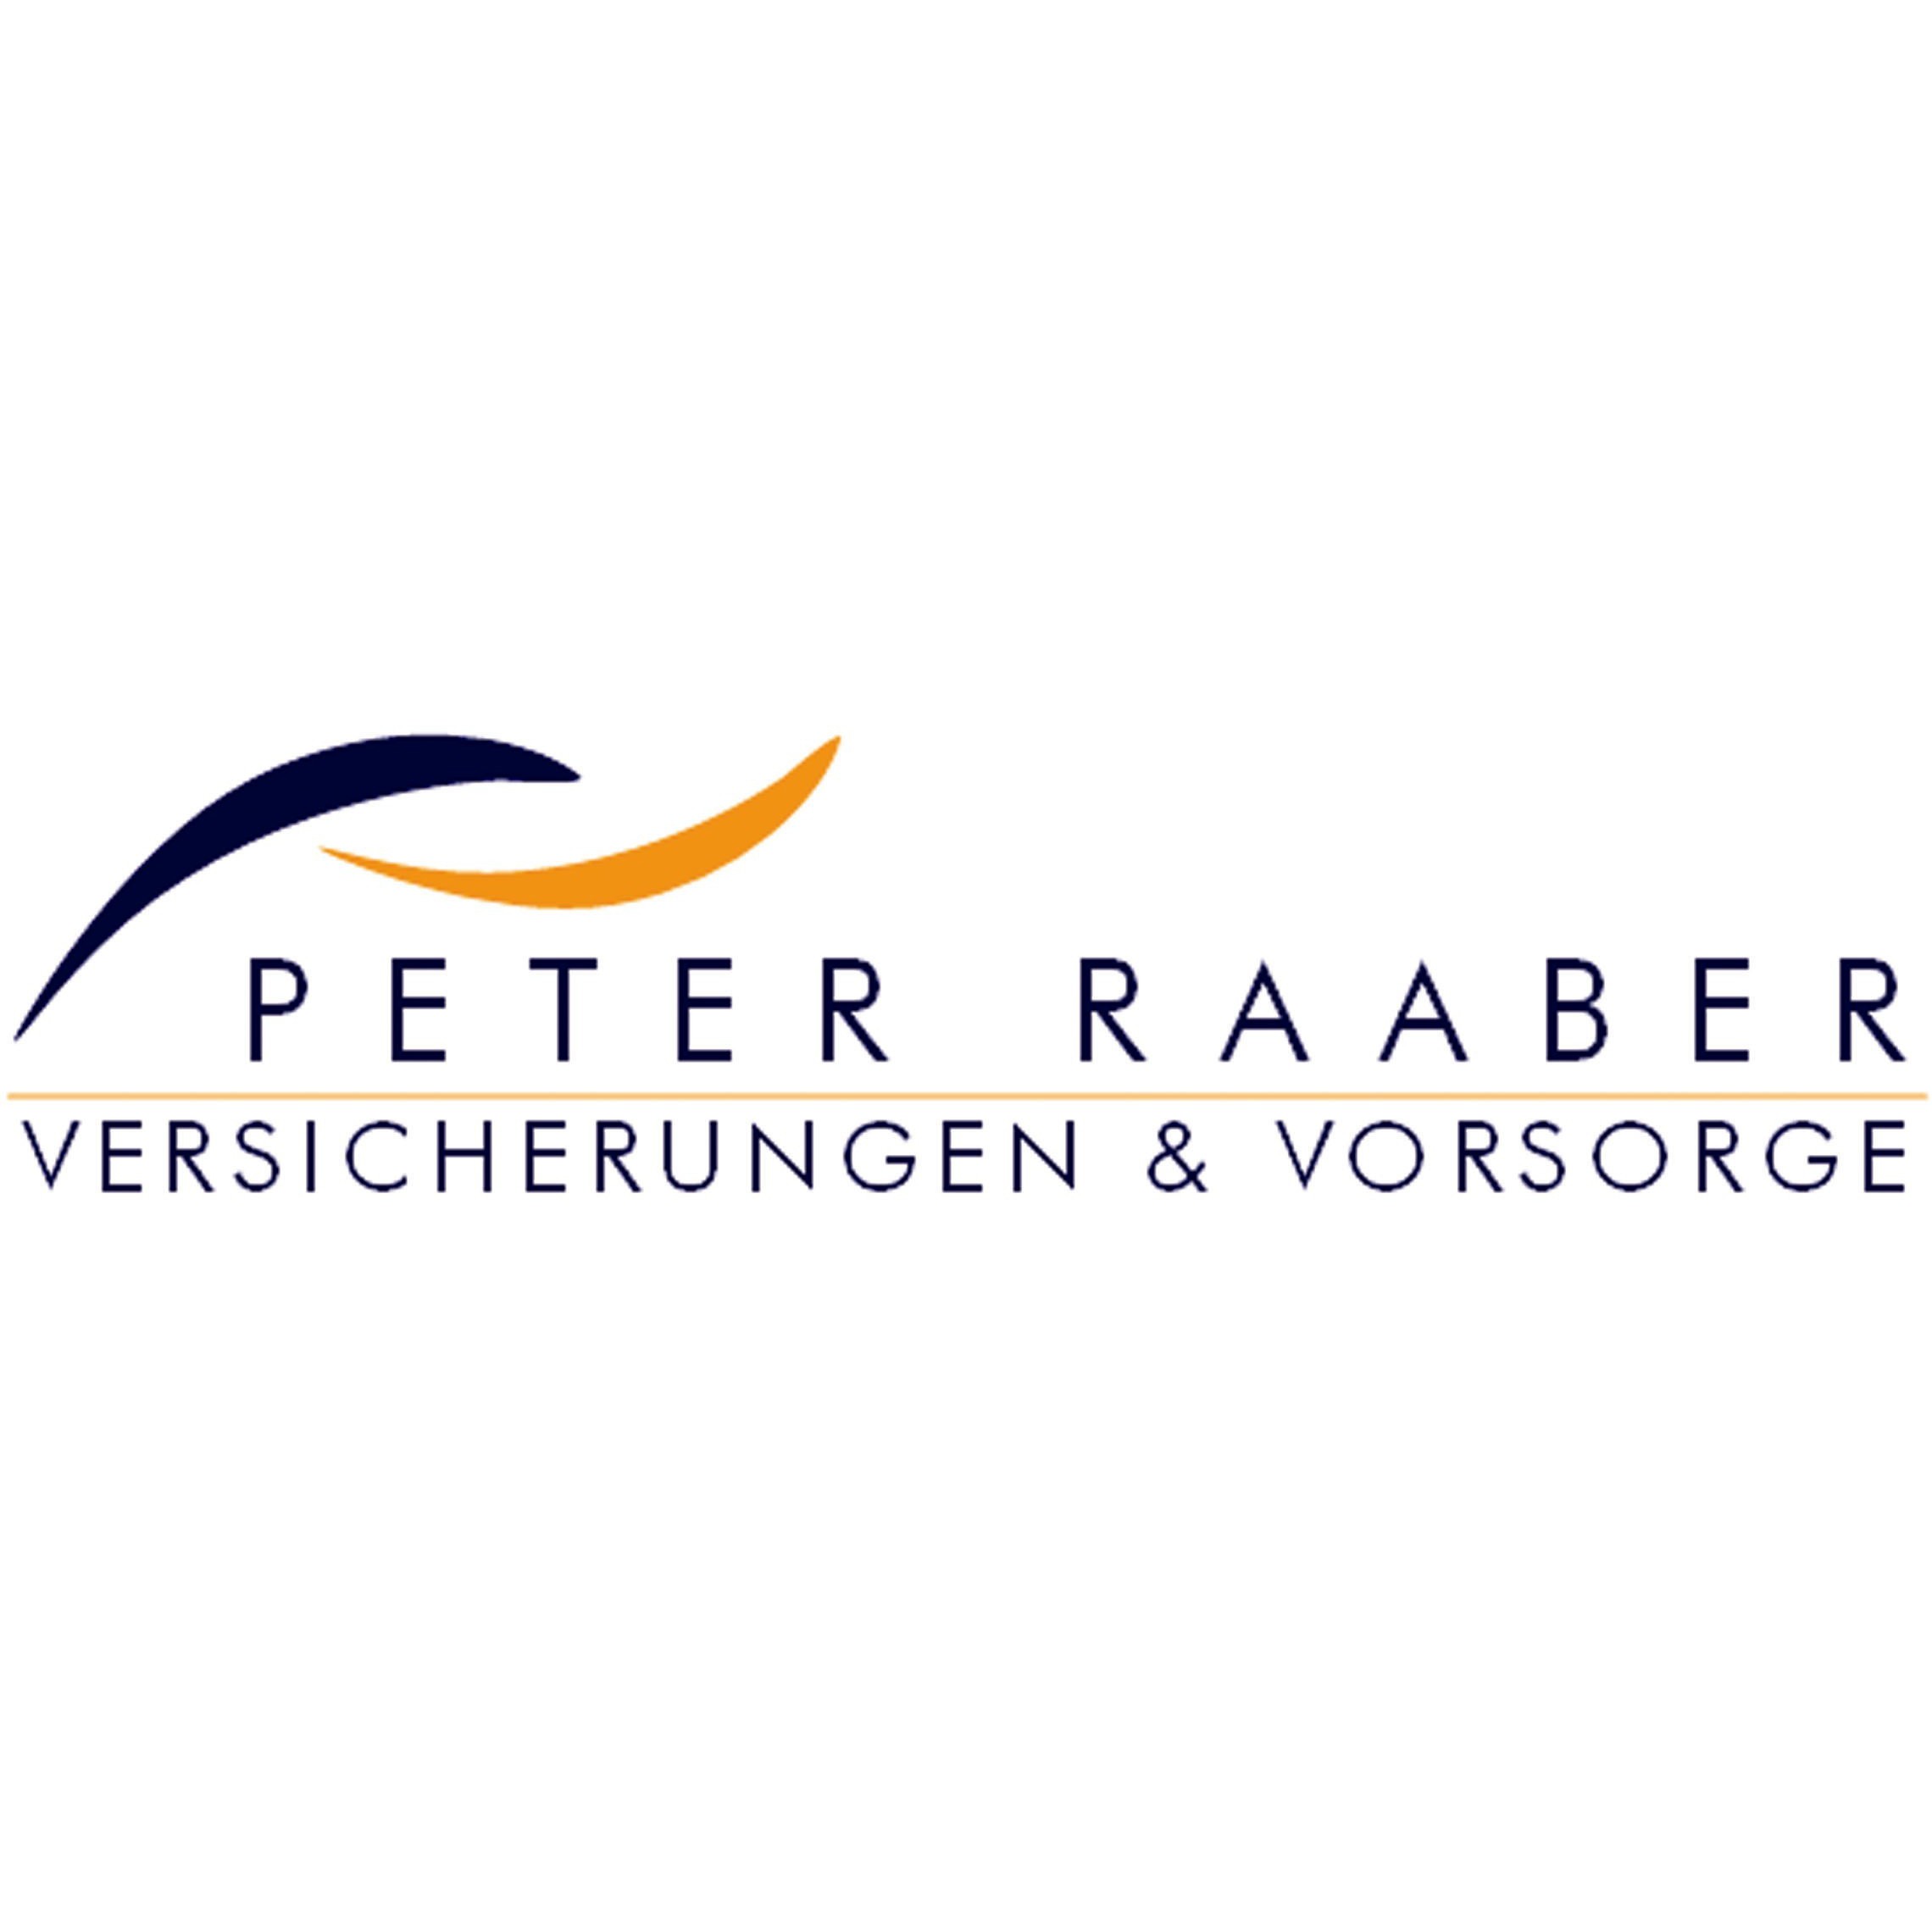 Peter Raaber Versicherungen & Vorsorge in Regensburg - Logo